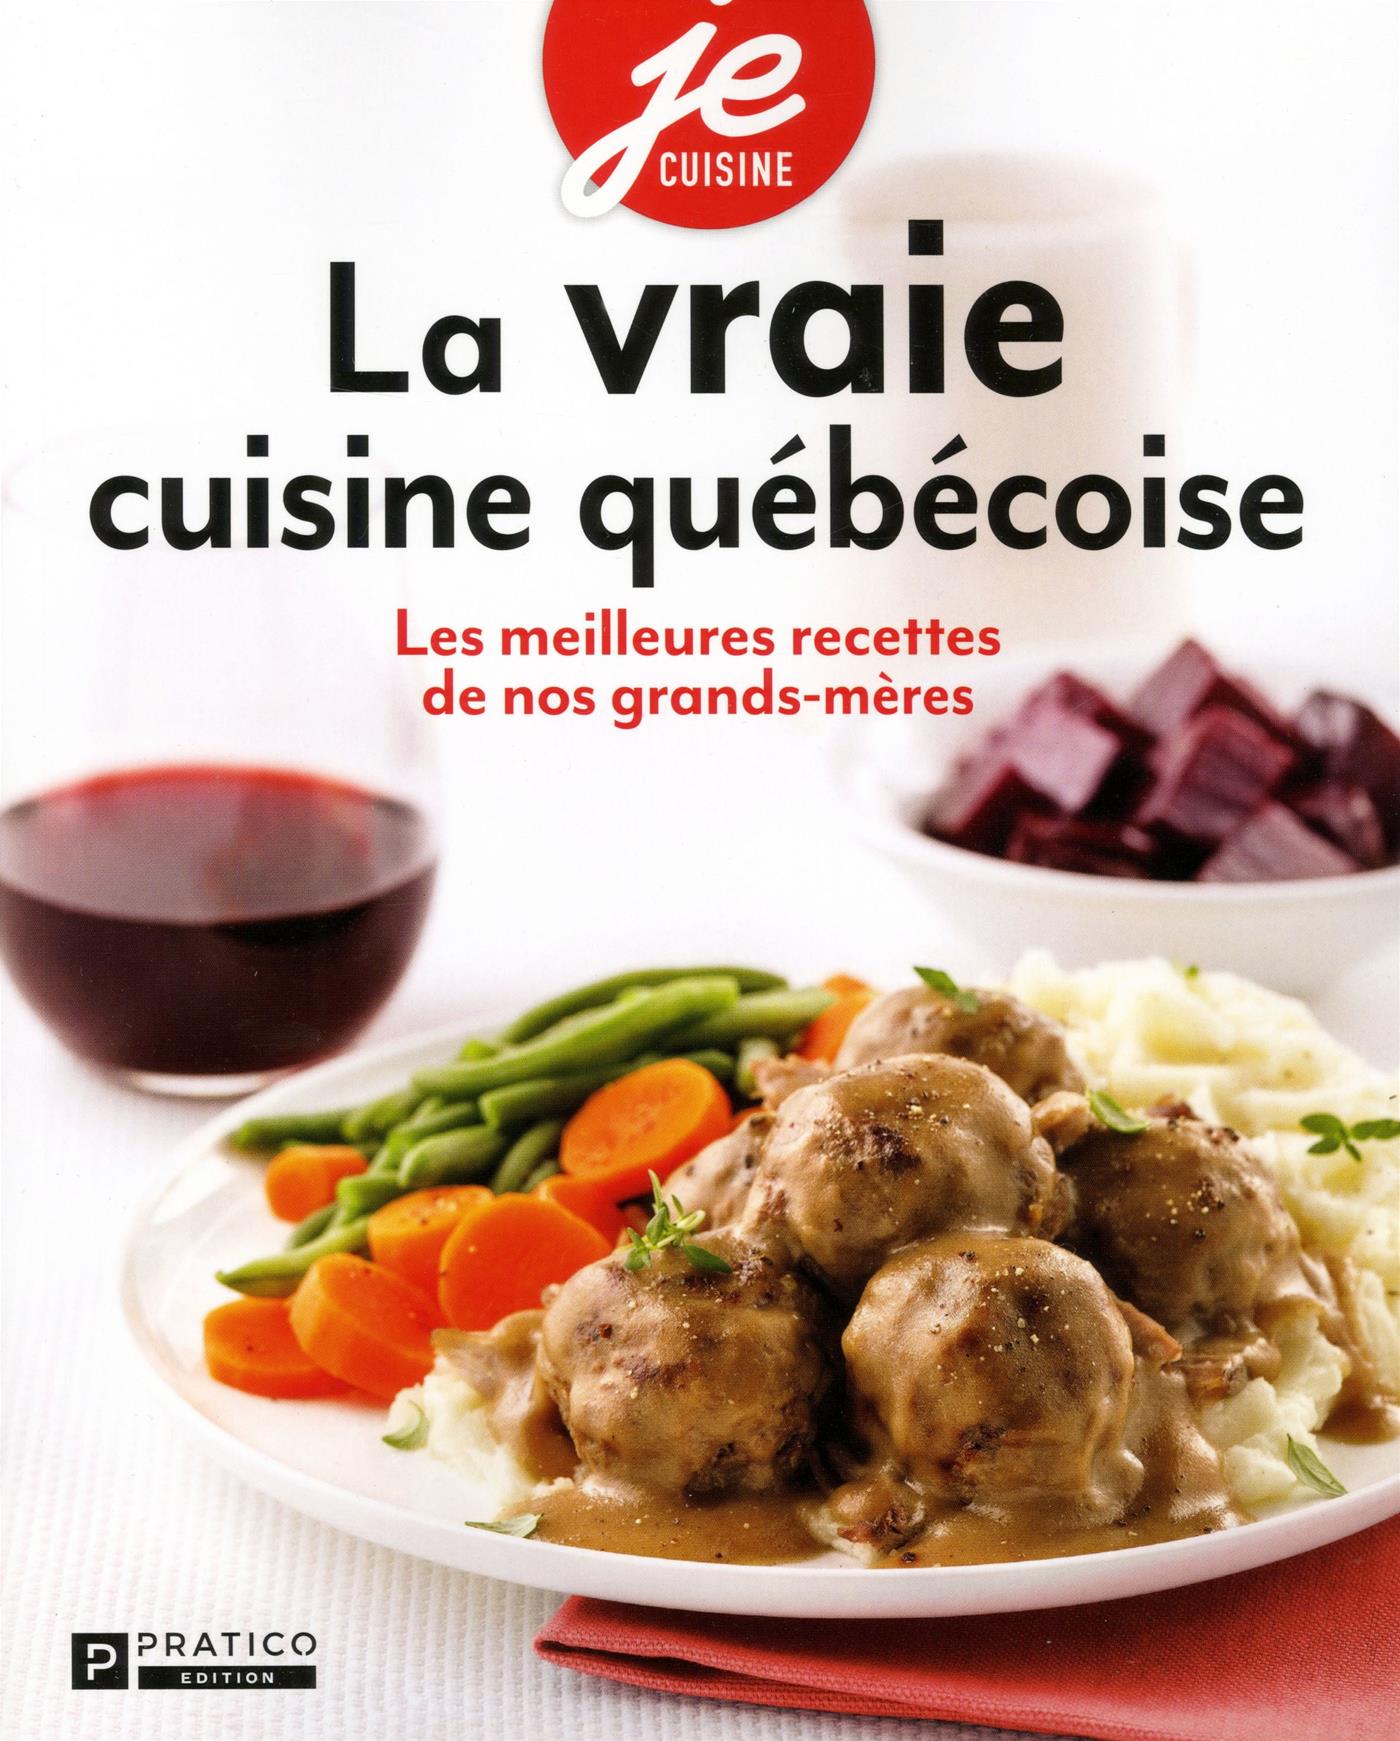 Meilleure collection de livres de cuisine santé au Canada - Groupe